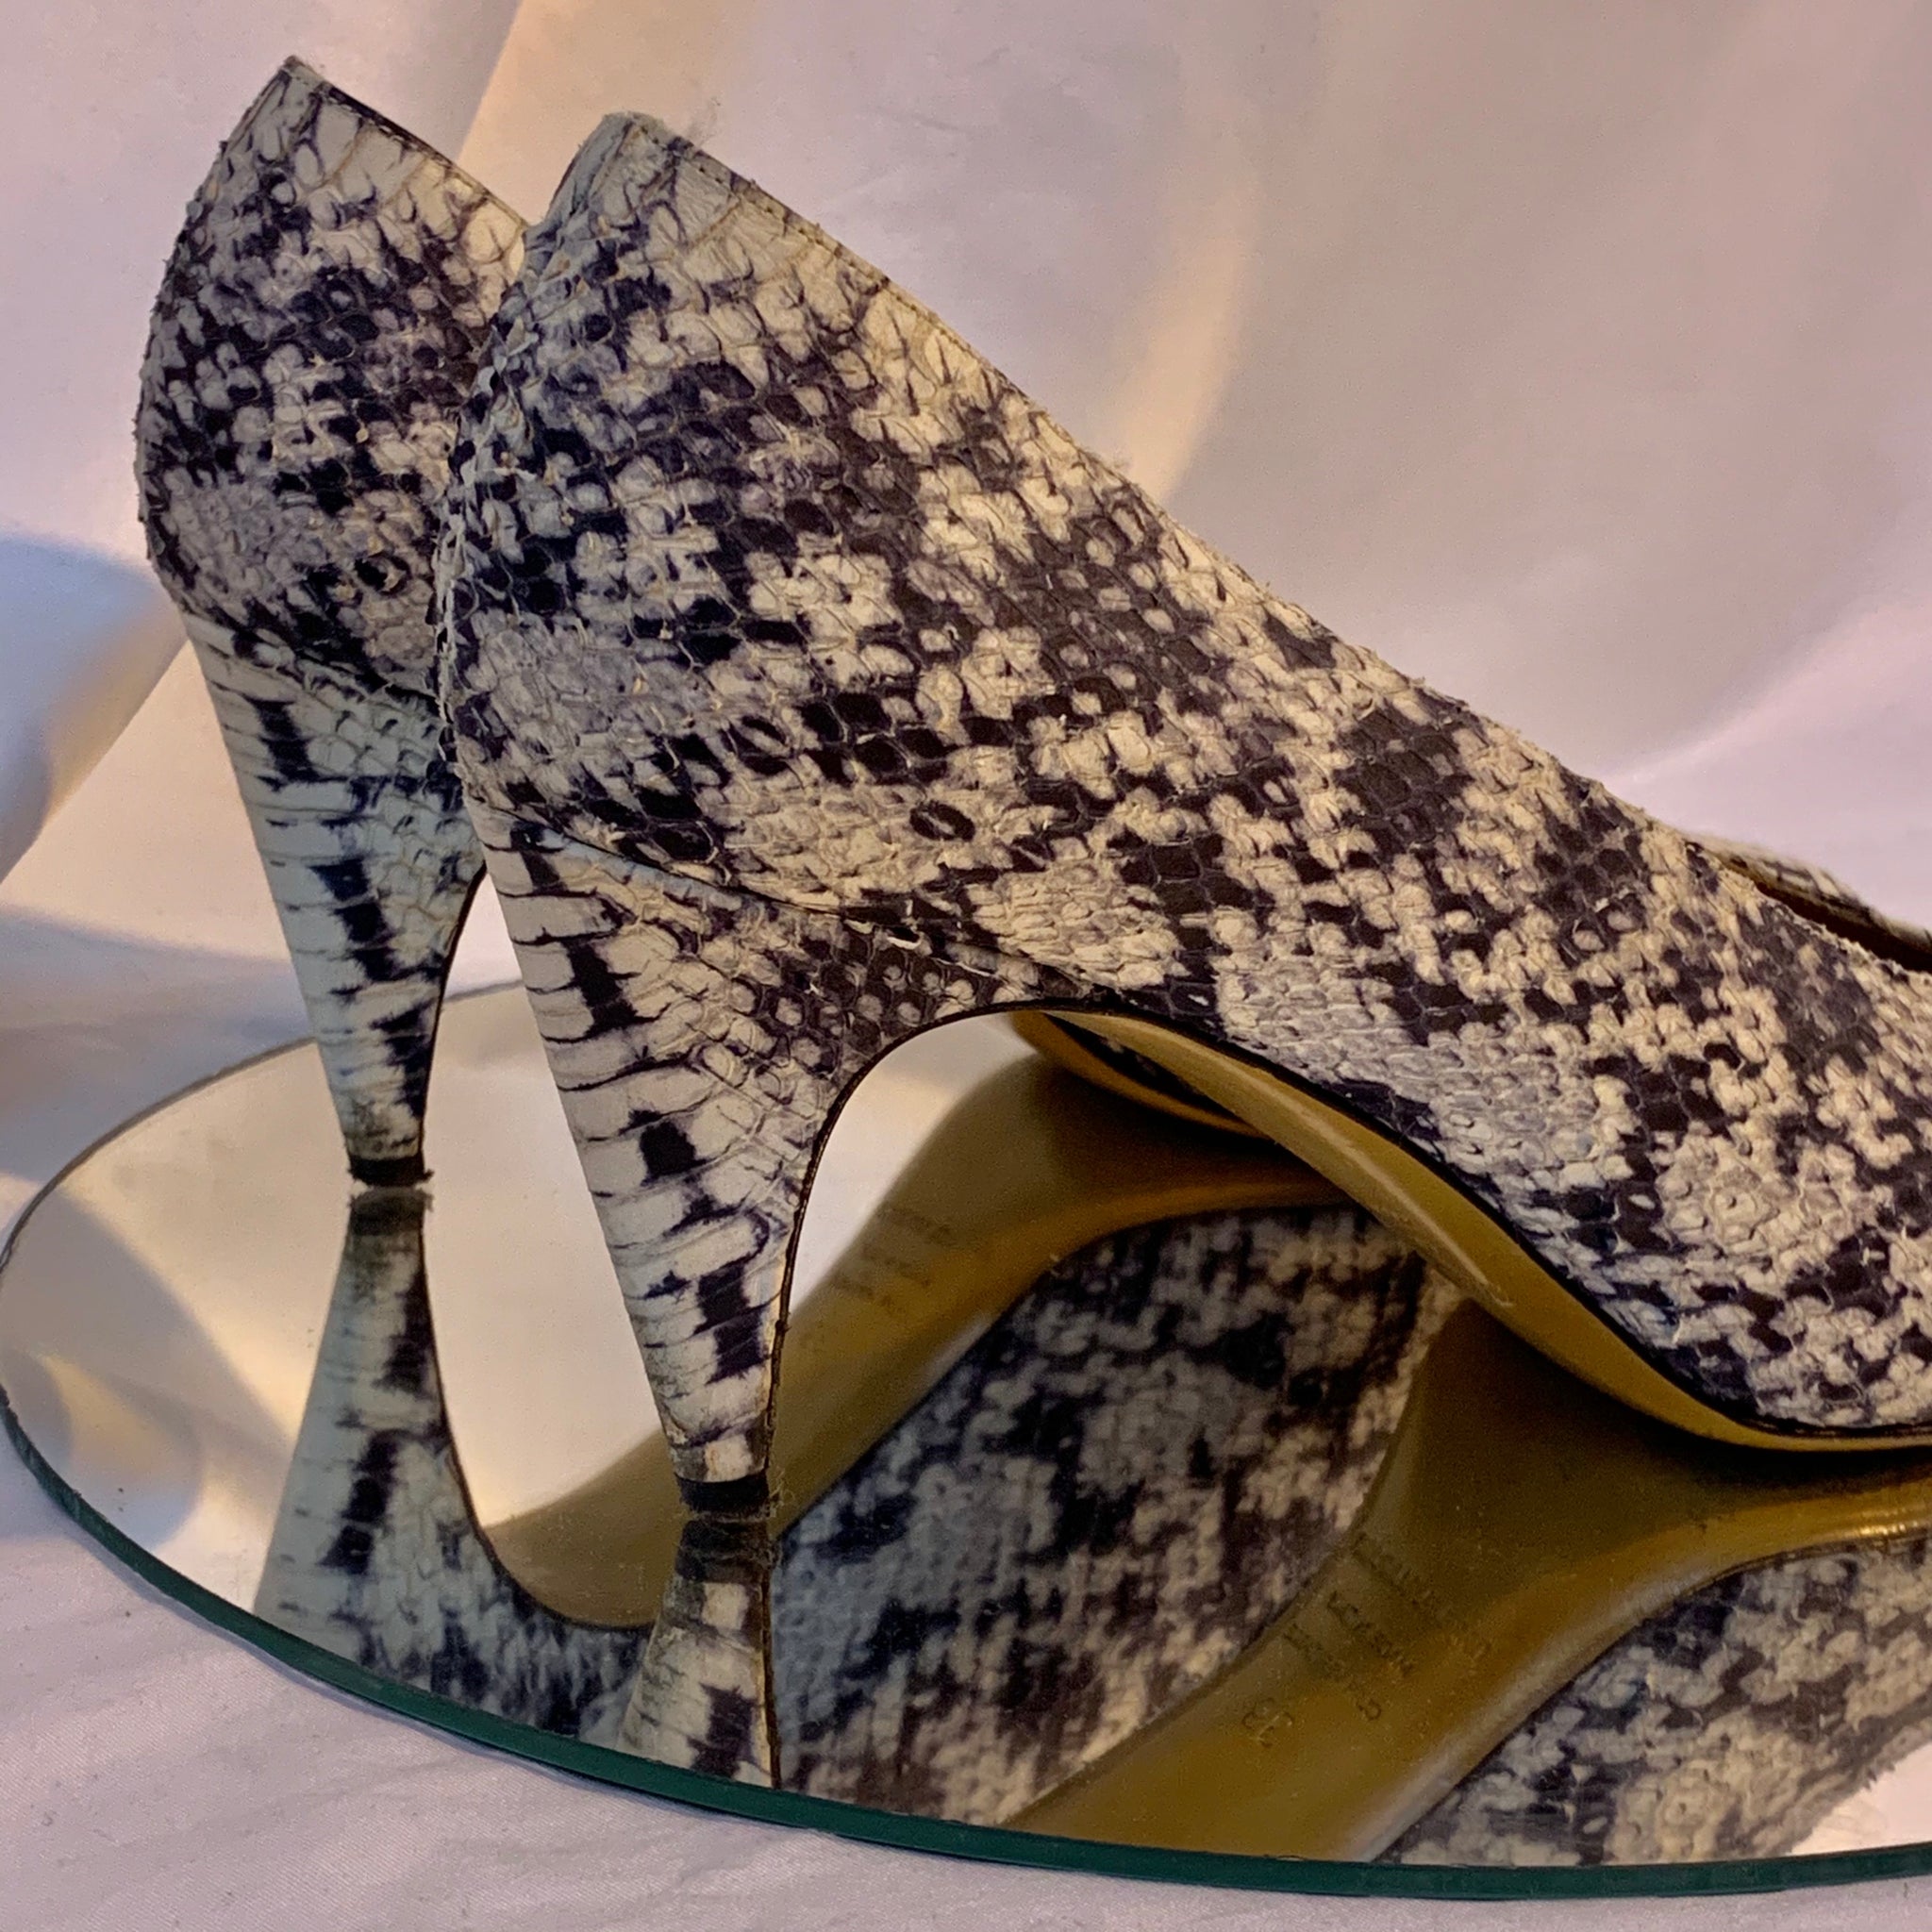 Isabel Marant pre-loved heels – Shop Vintage